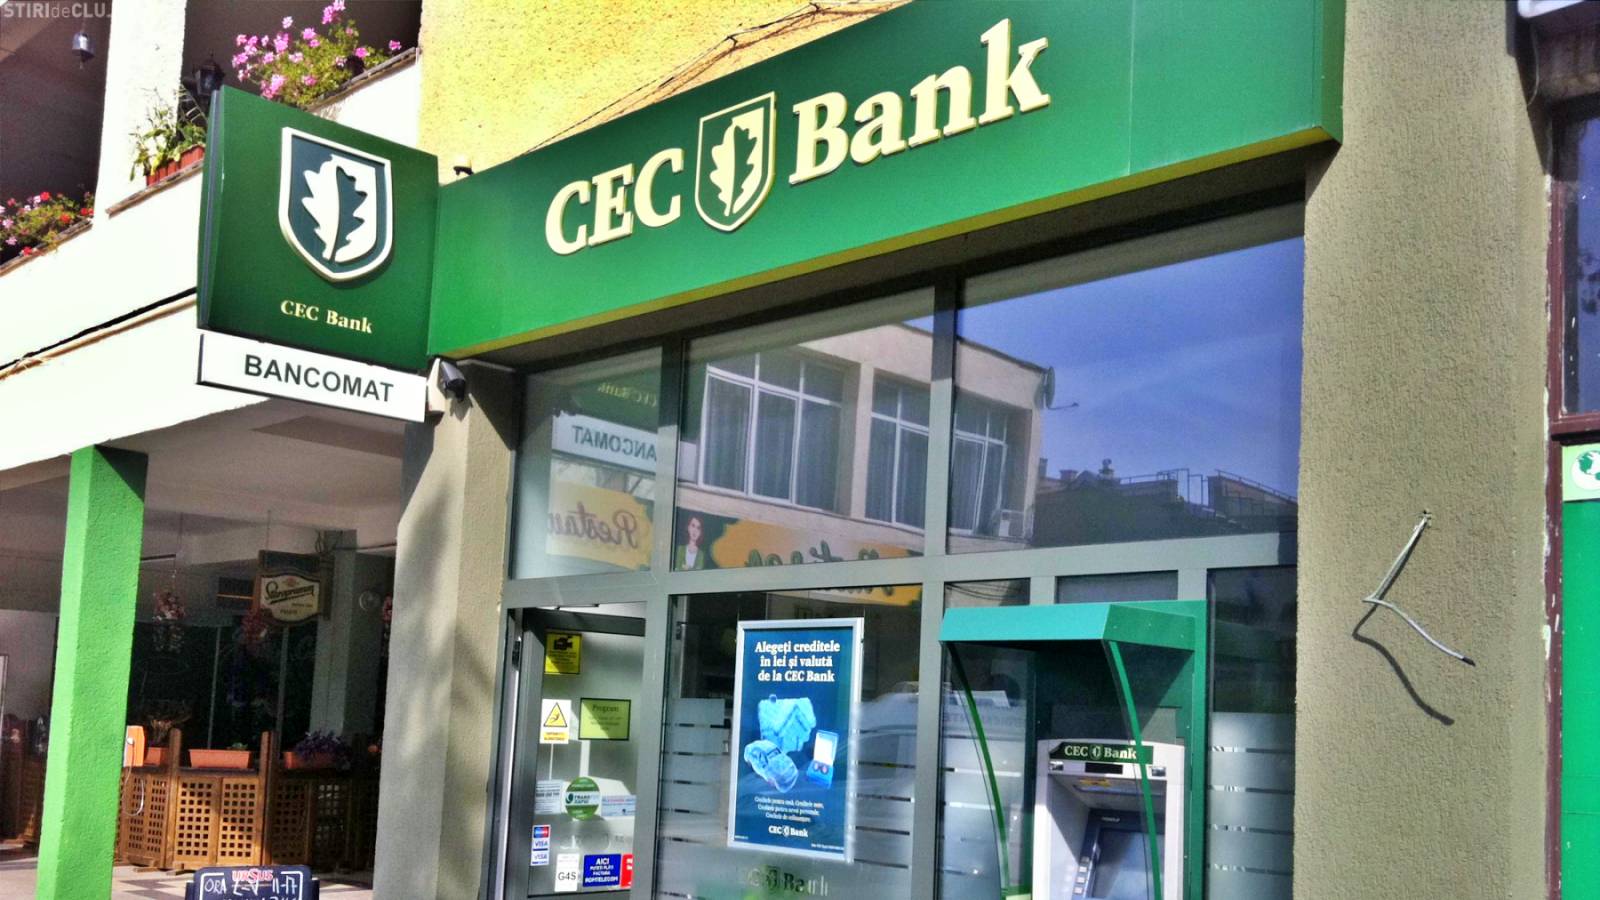 Ubicación del banco CEC